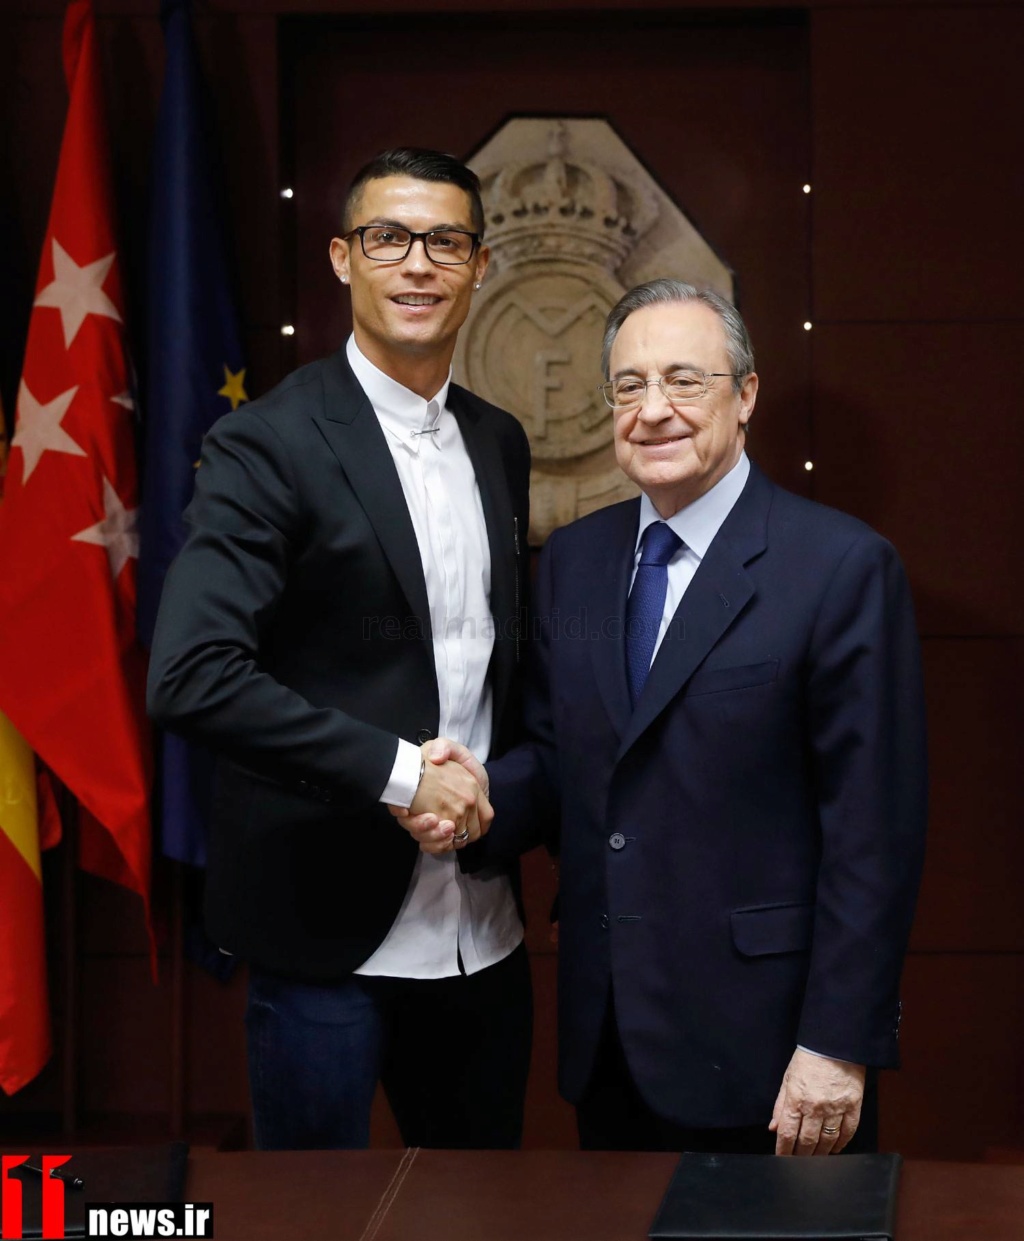 ¿Cuánto mide Cristiano Ronaldo? - Altura y peso - Real height - Página 2 76010_10